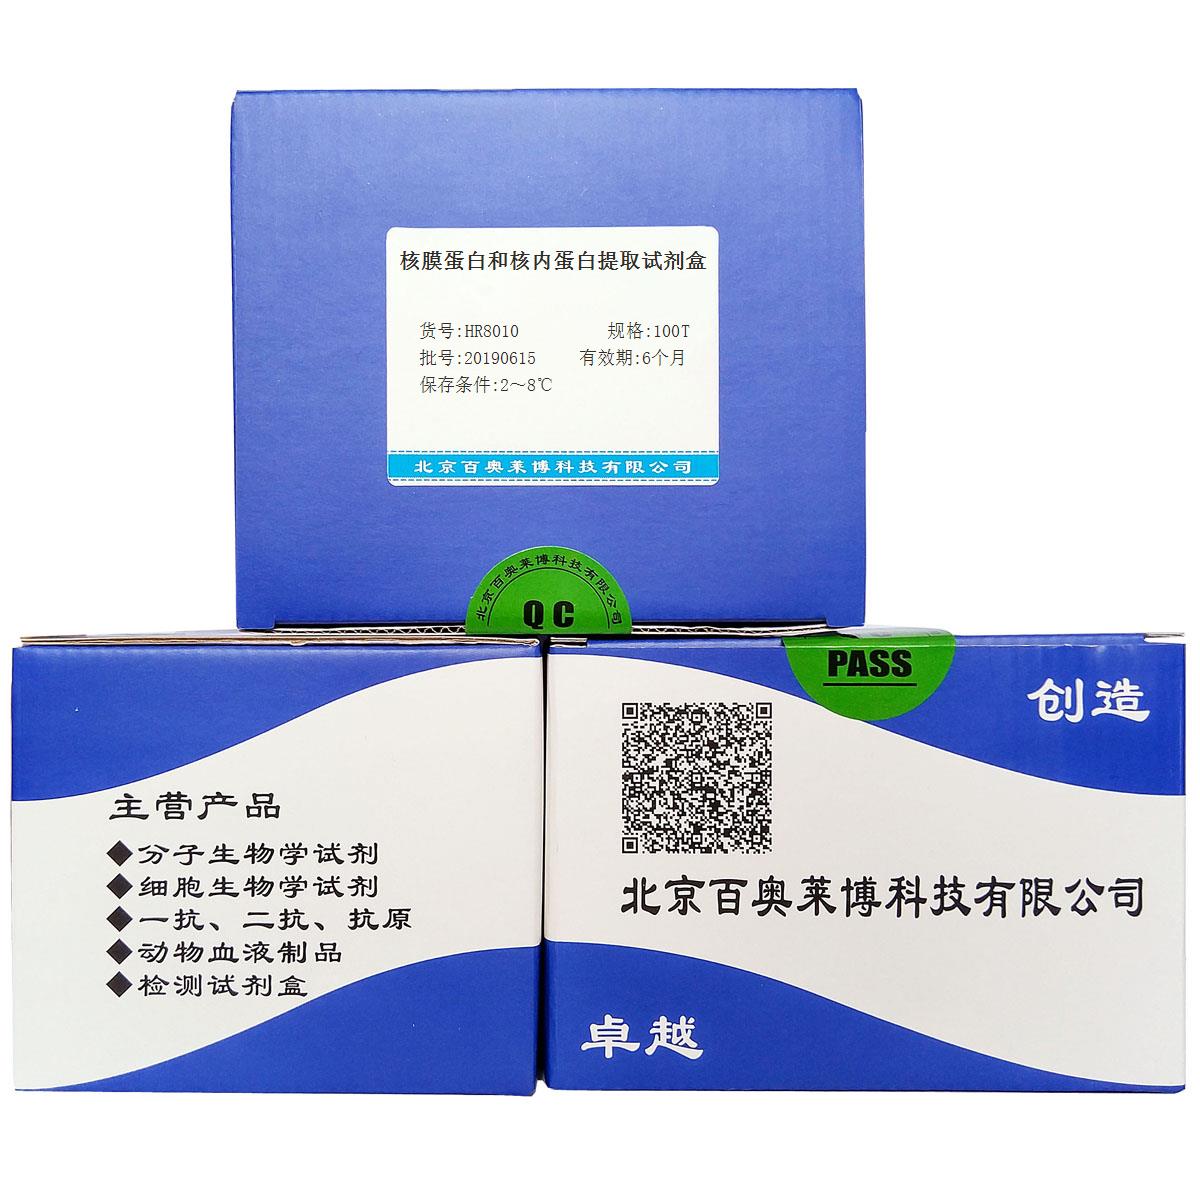 核膜蛋白和核内蛋白提取试剂盒北京厂家